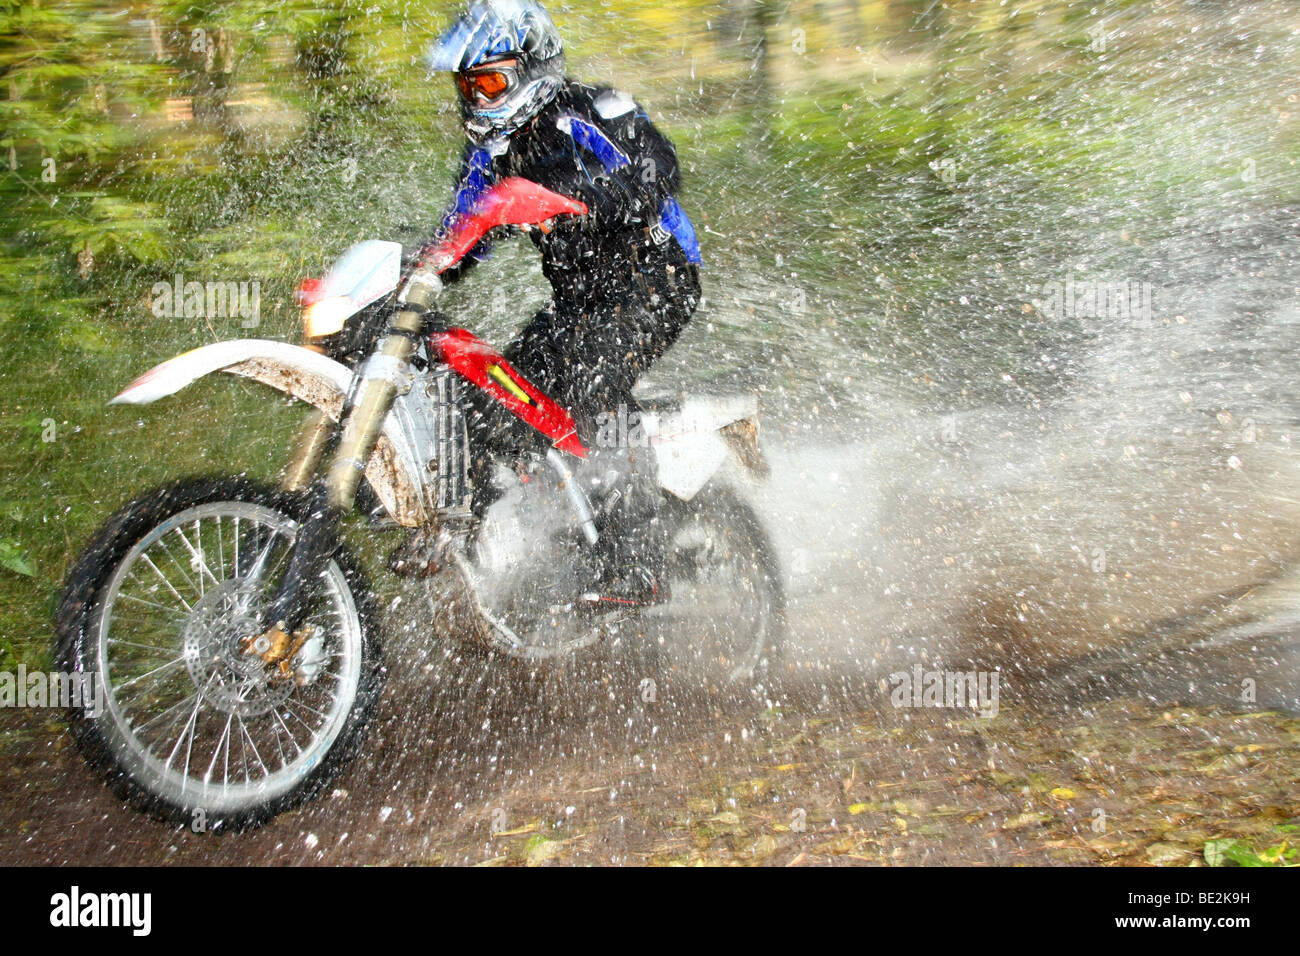 Moto hors route crossing river, les éclaboussures d'eau autour. Image dynamique avec effet de flou. Banque D'Images